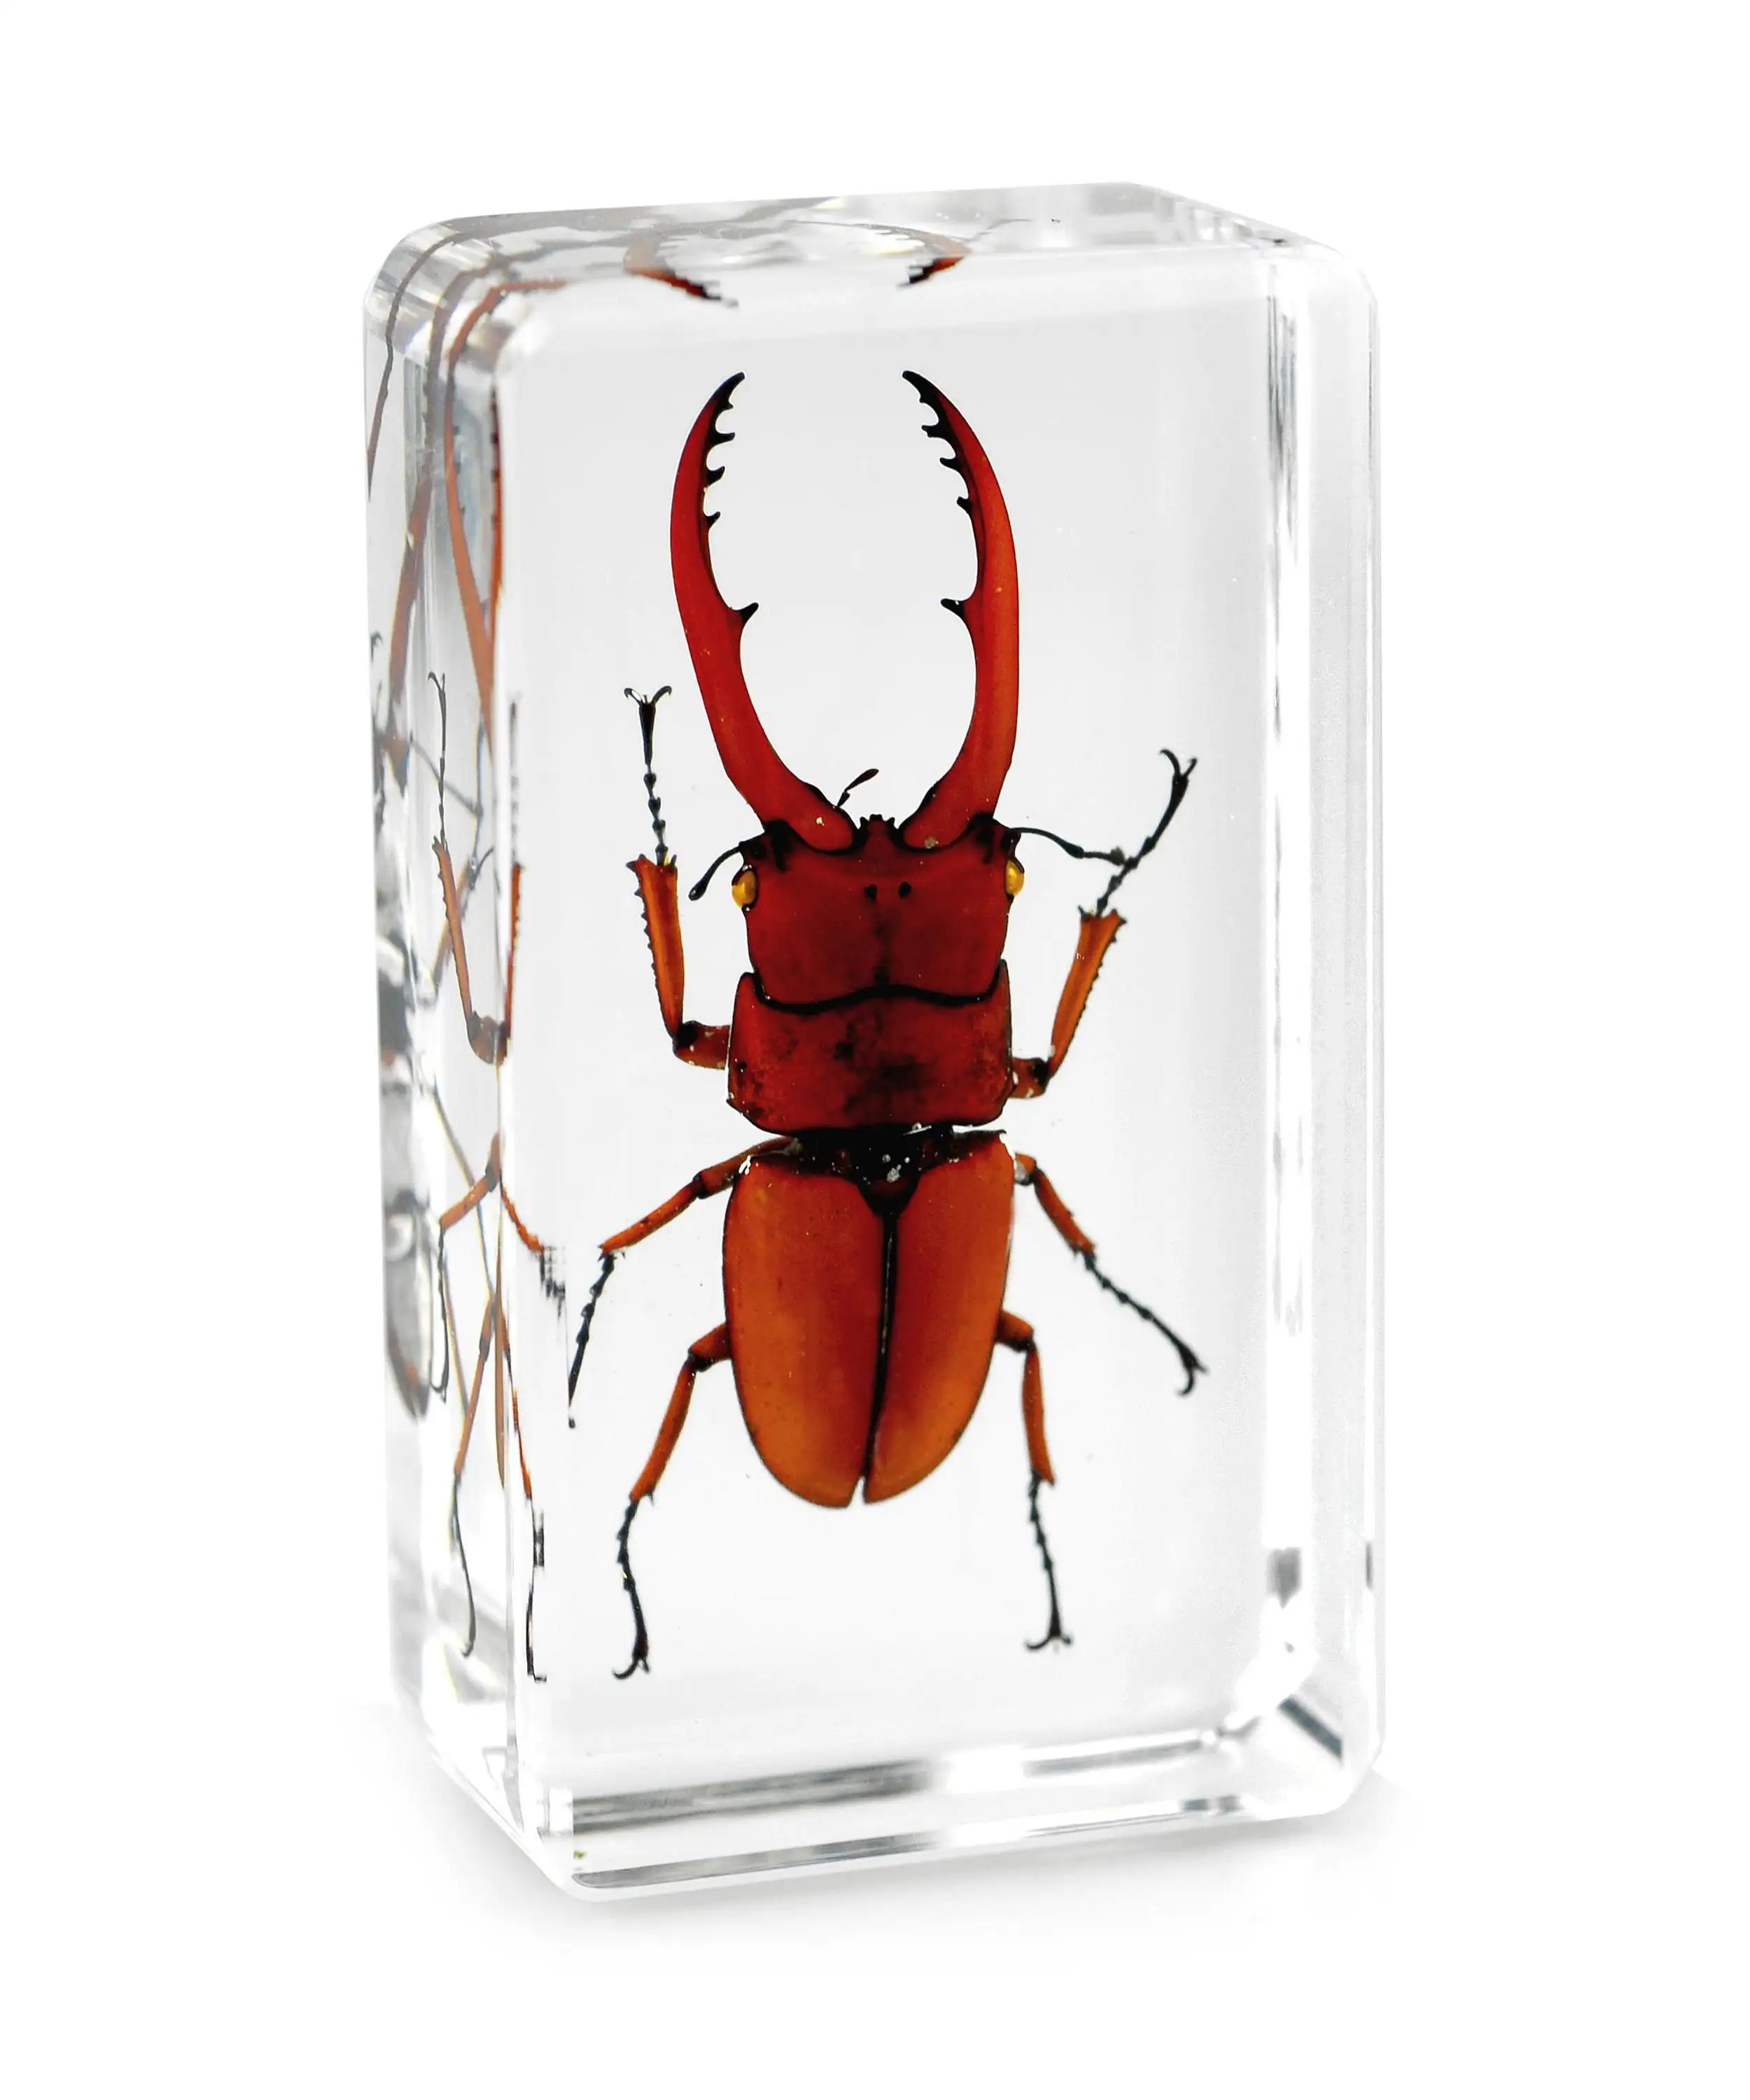 Chí fortune Stag Beetle Côn Trùng Acrylic Mẫu Chặn Giấy Tự Nhiên